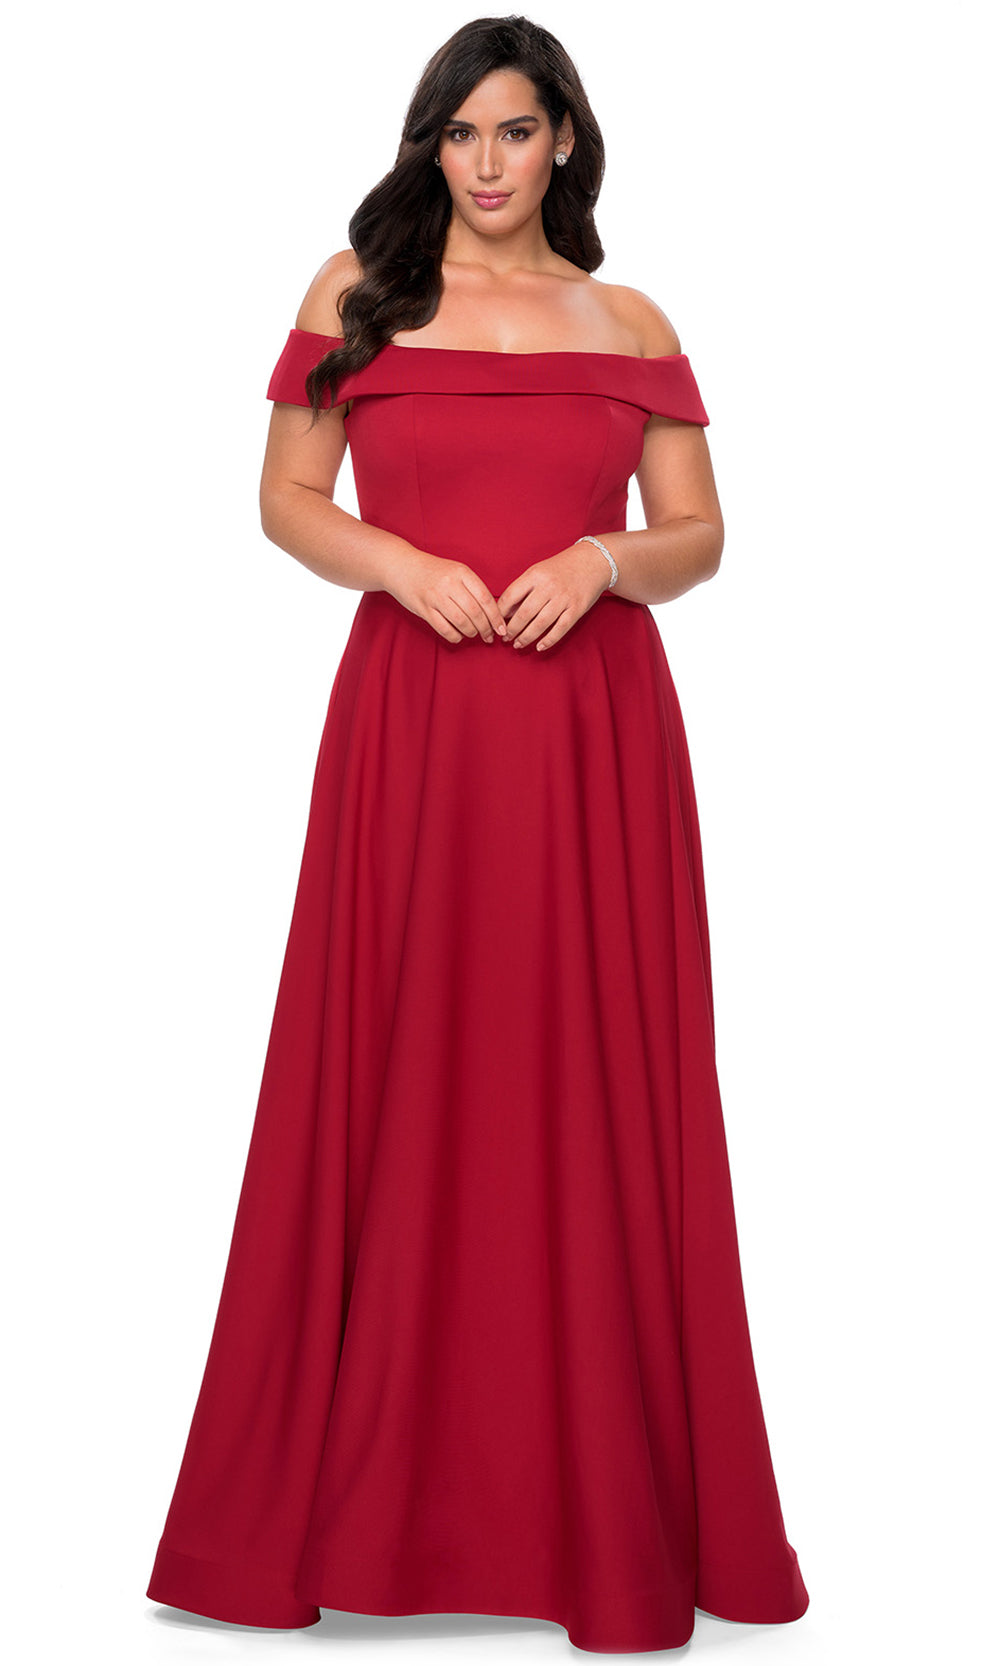 La Femme - 29007 Off Shoulder Jersey A-Line Dress With Slit In Red